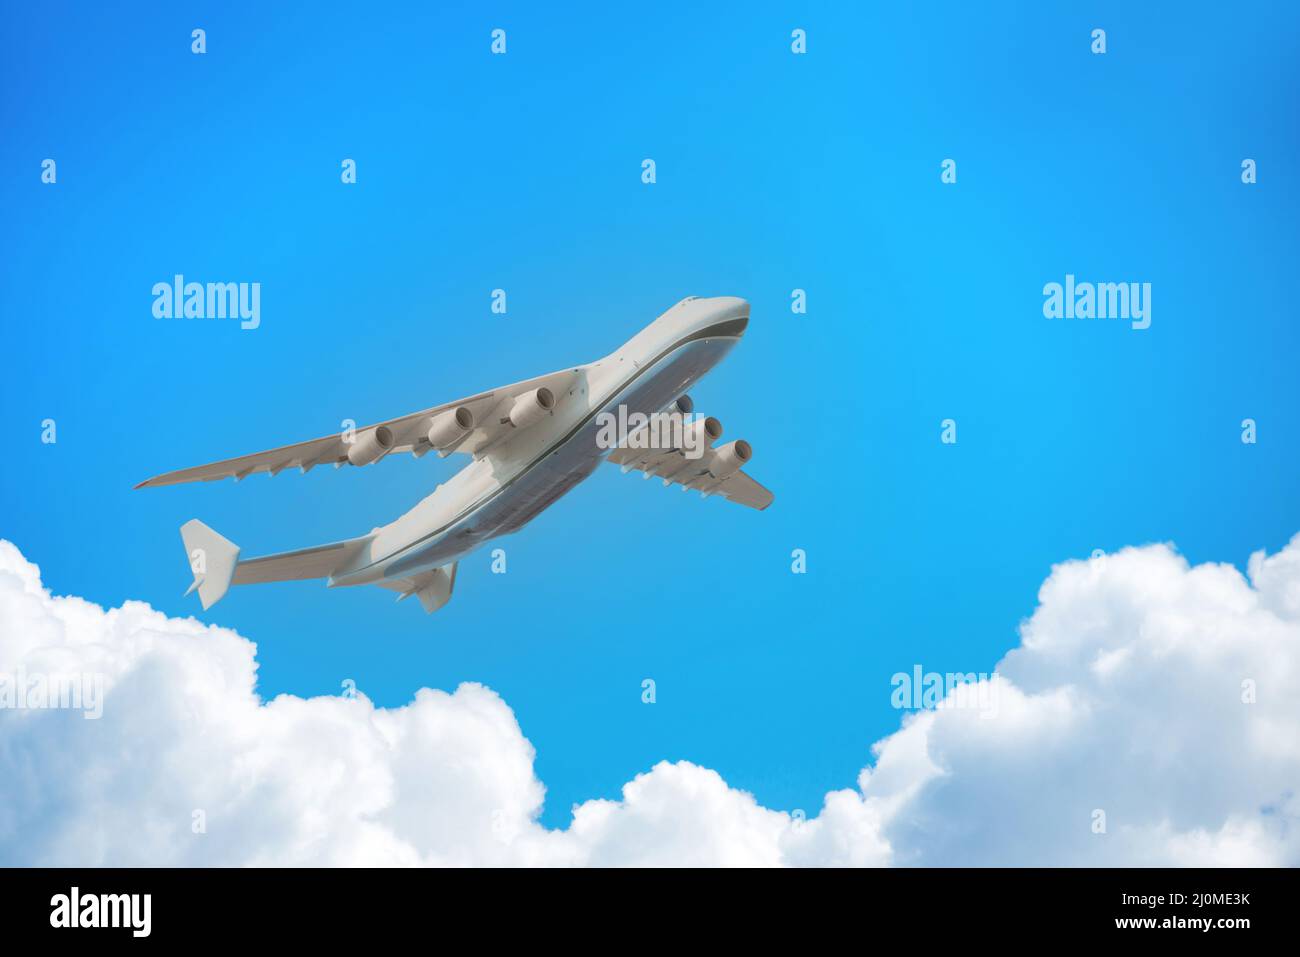 Plane flight jet on blue sky Stock Photo